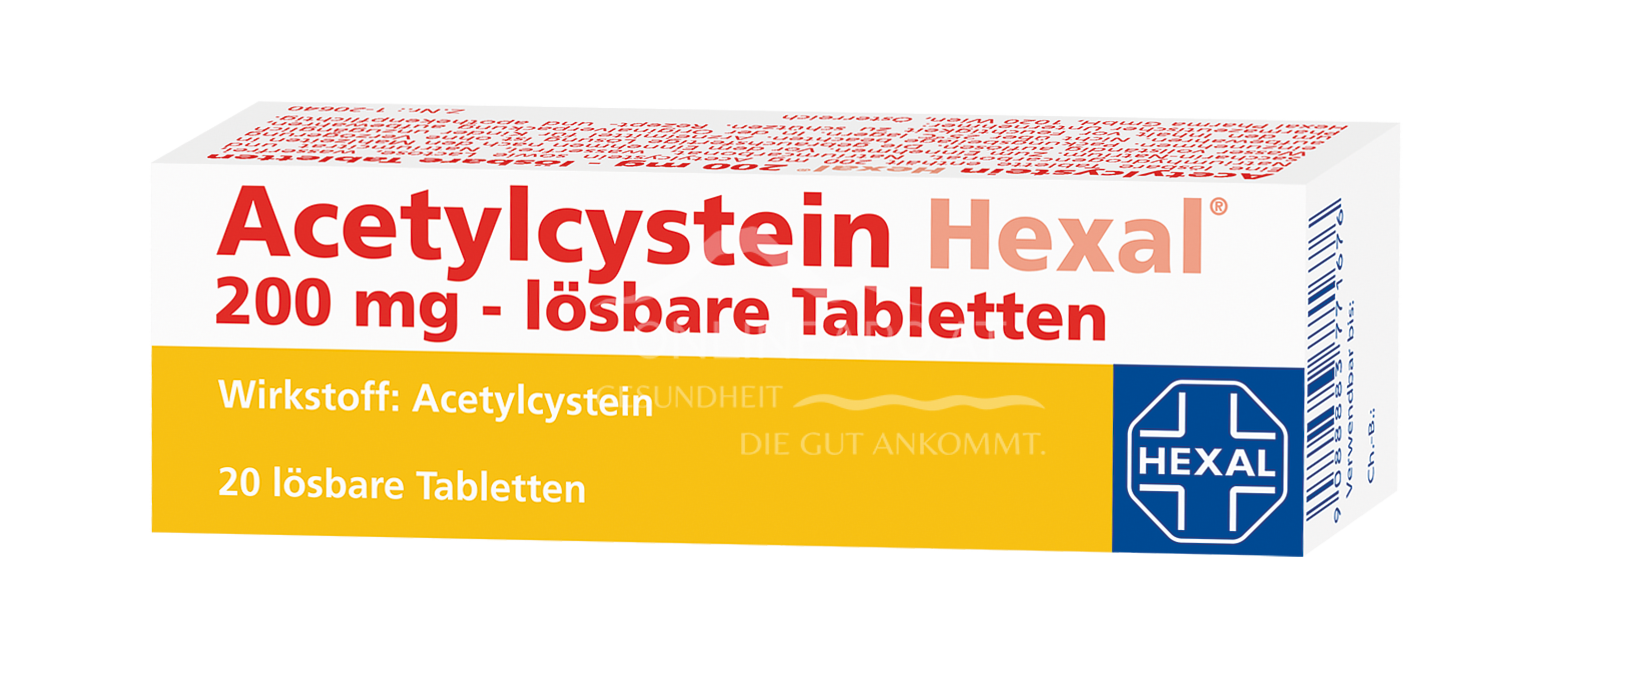 Acetylcystein Hexal 200 mg lösbare Tabletten